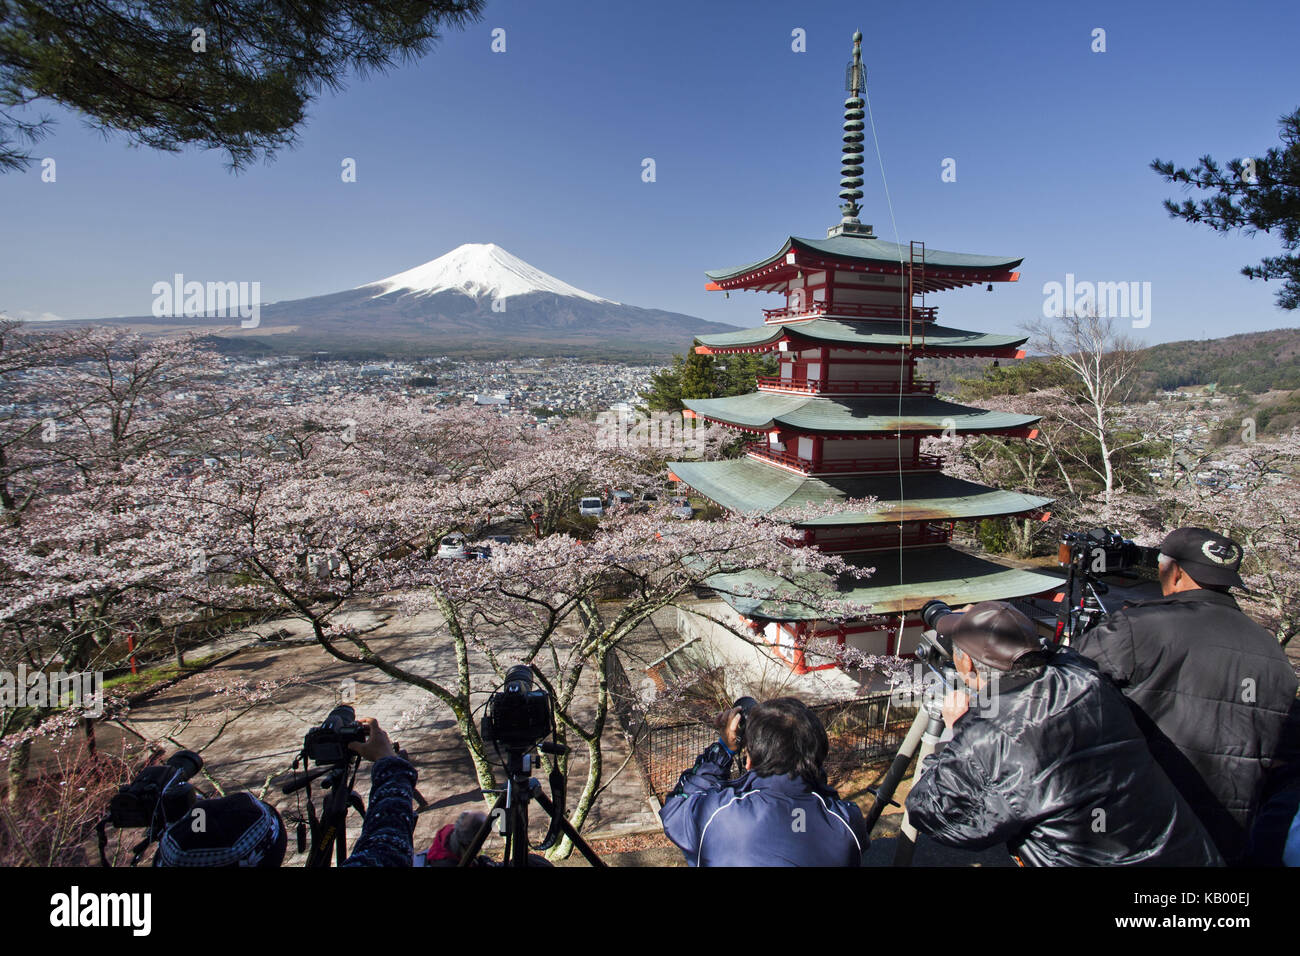 Le Japon, pagode dans le sanctuaire sengen arakura, fleurs de cerisier et le mont Fuji, photographe, Banque D'Images